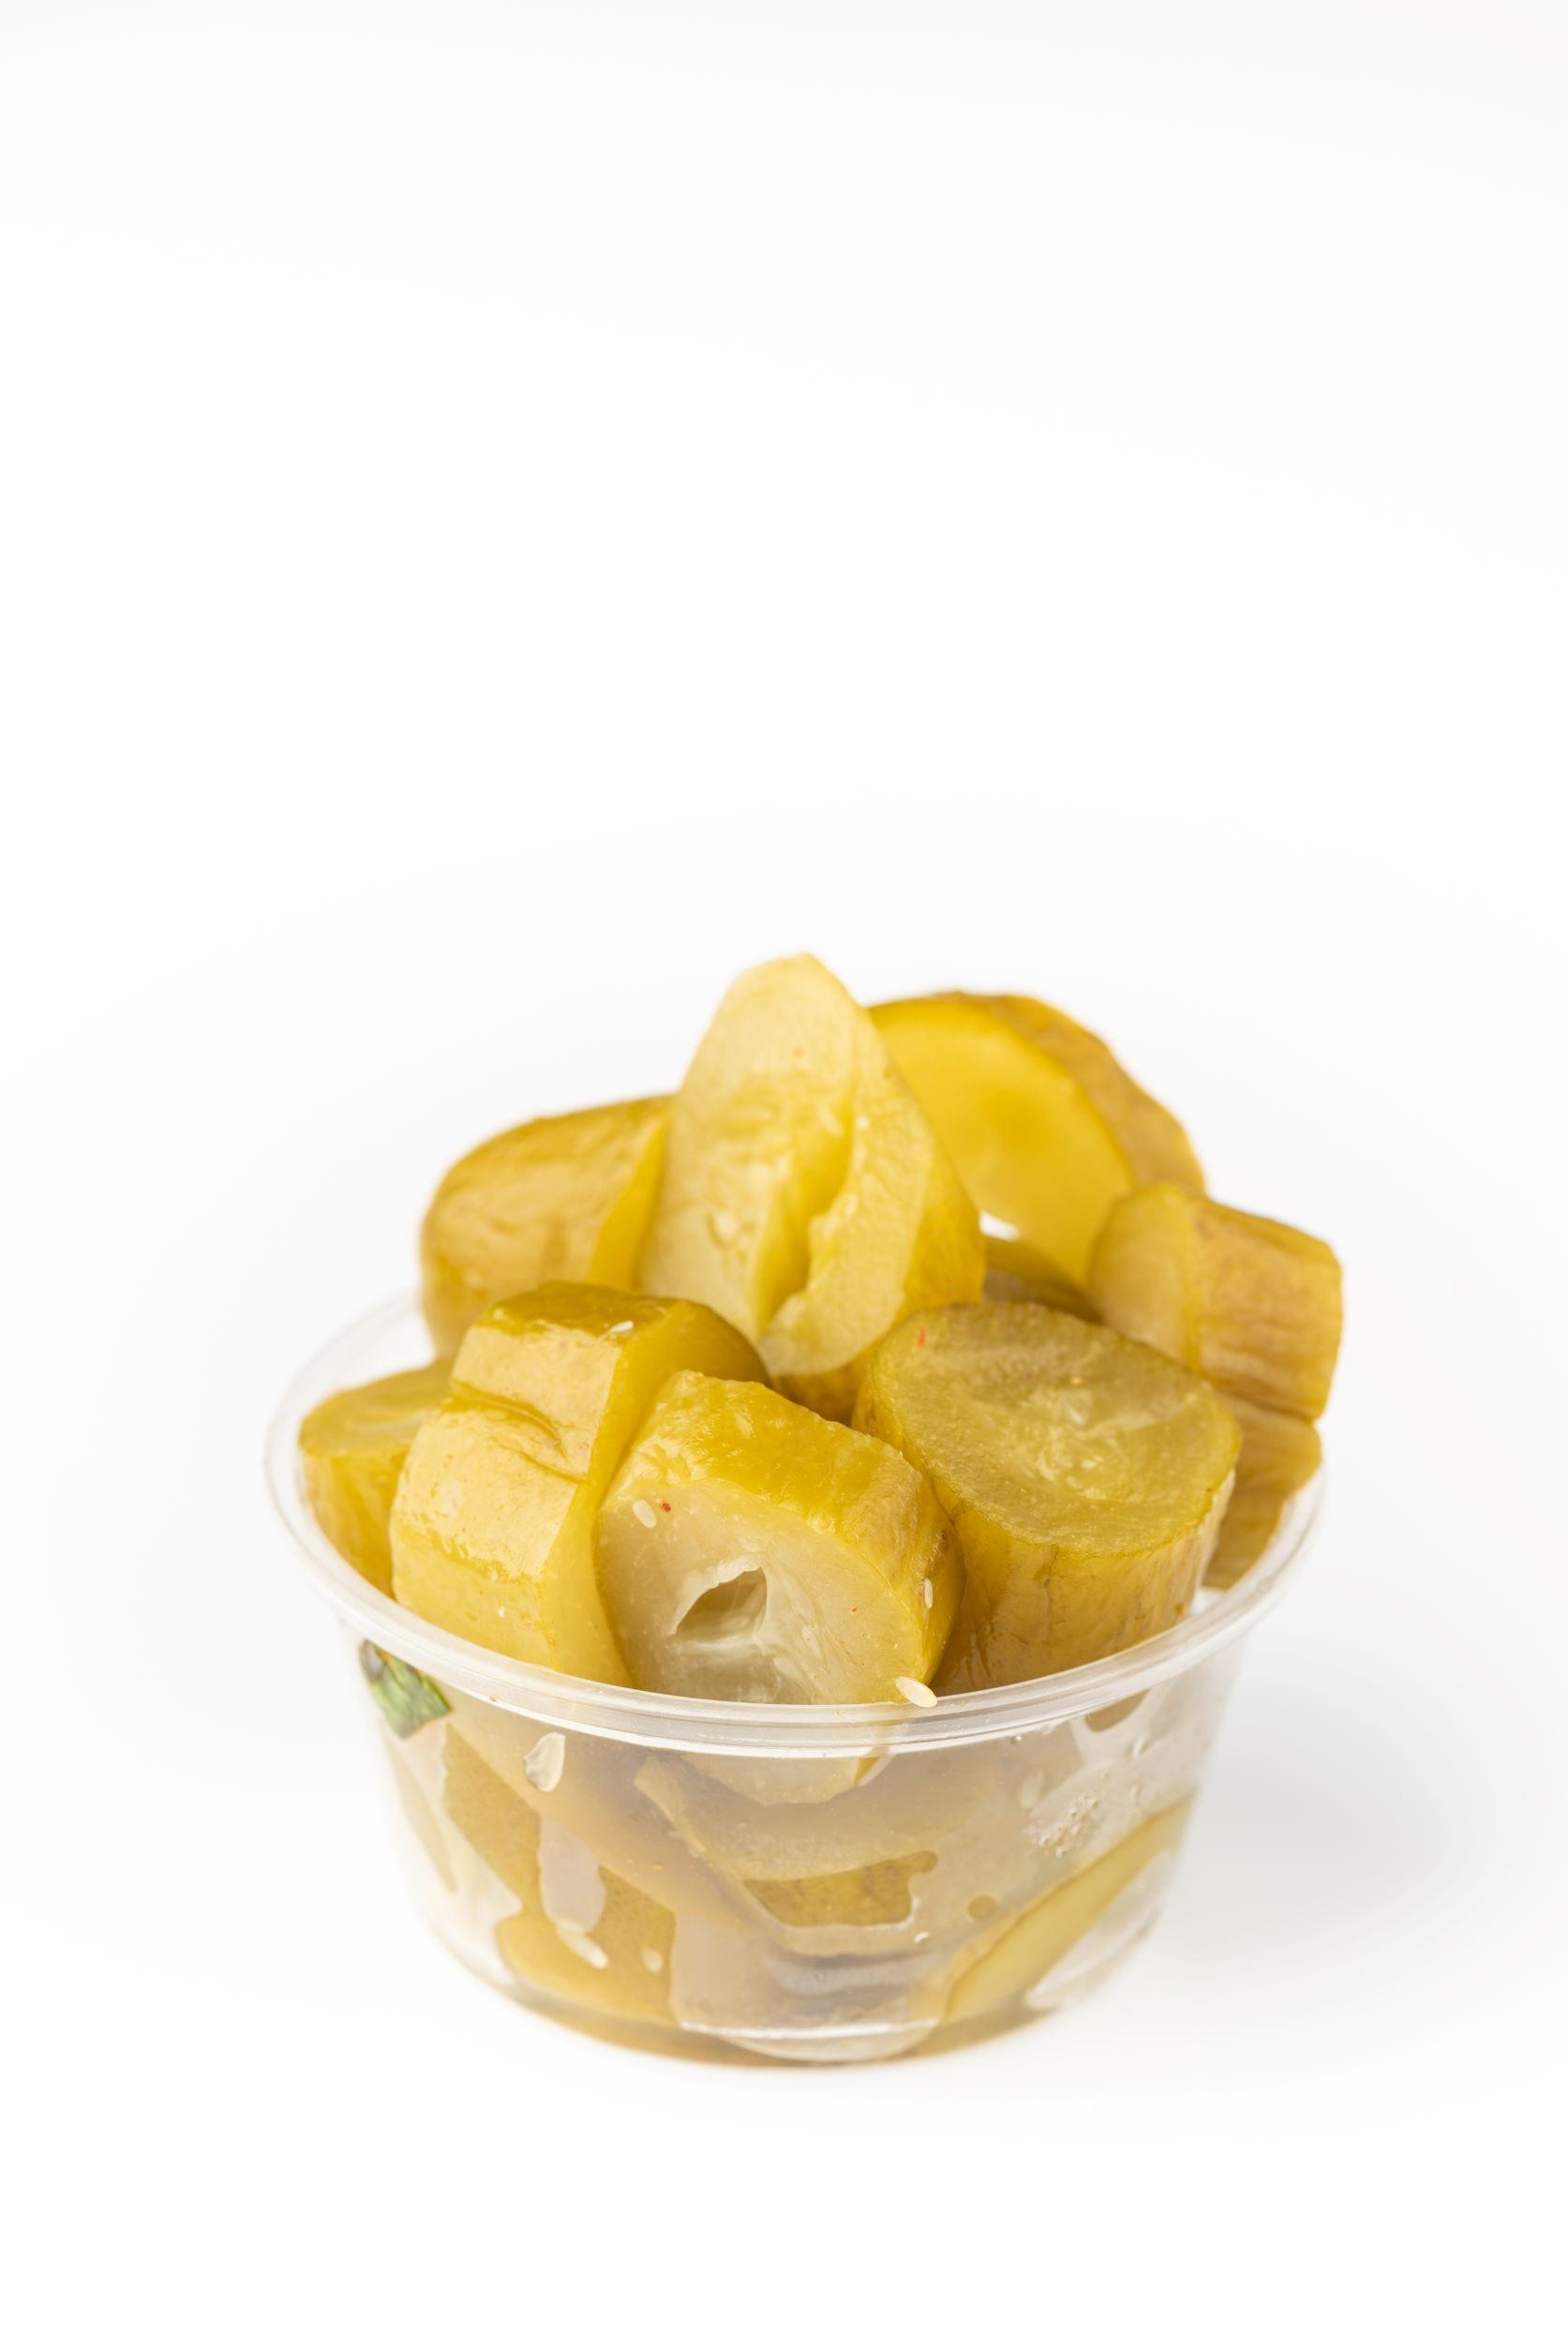 Israeli pickles